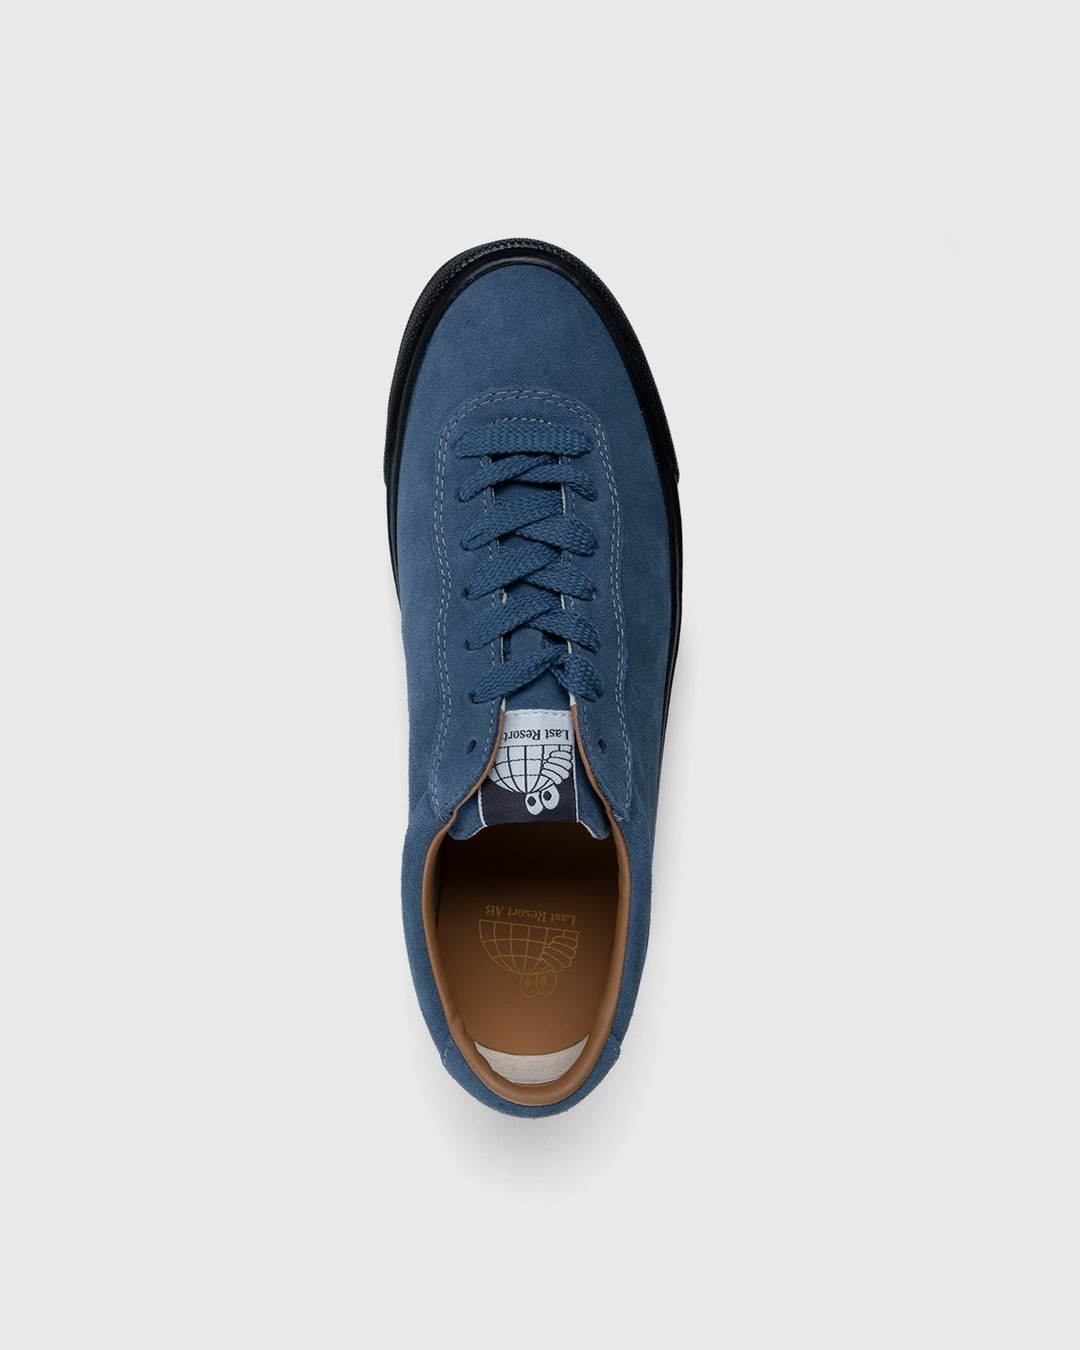 Last Resort AB – VM001 Suede Lo Blue/Black - Low Top Sneakers - Blue - Image 6